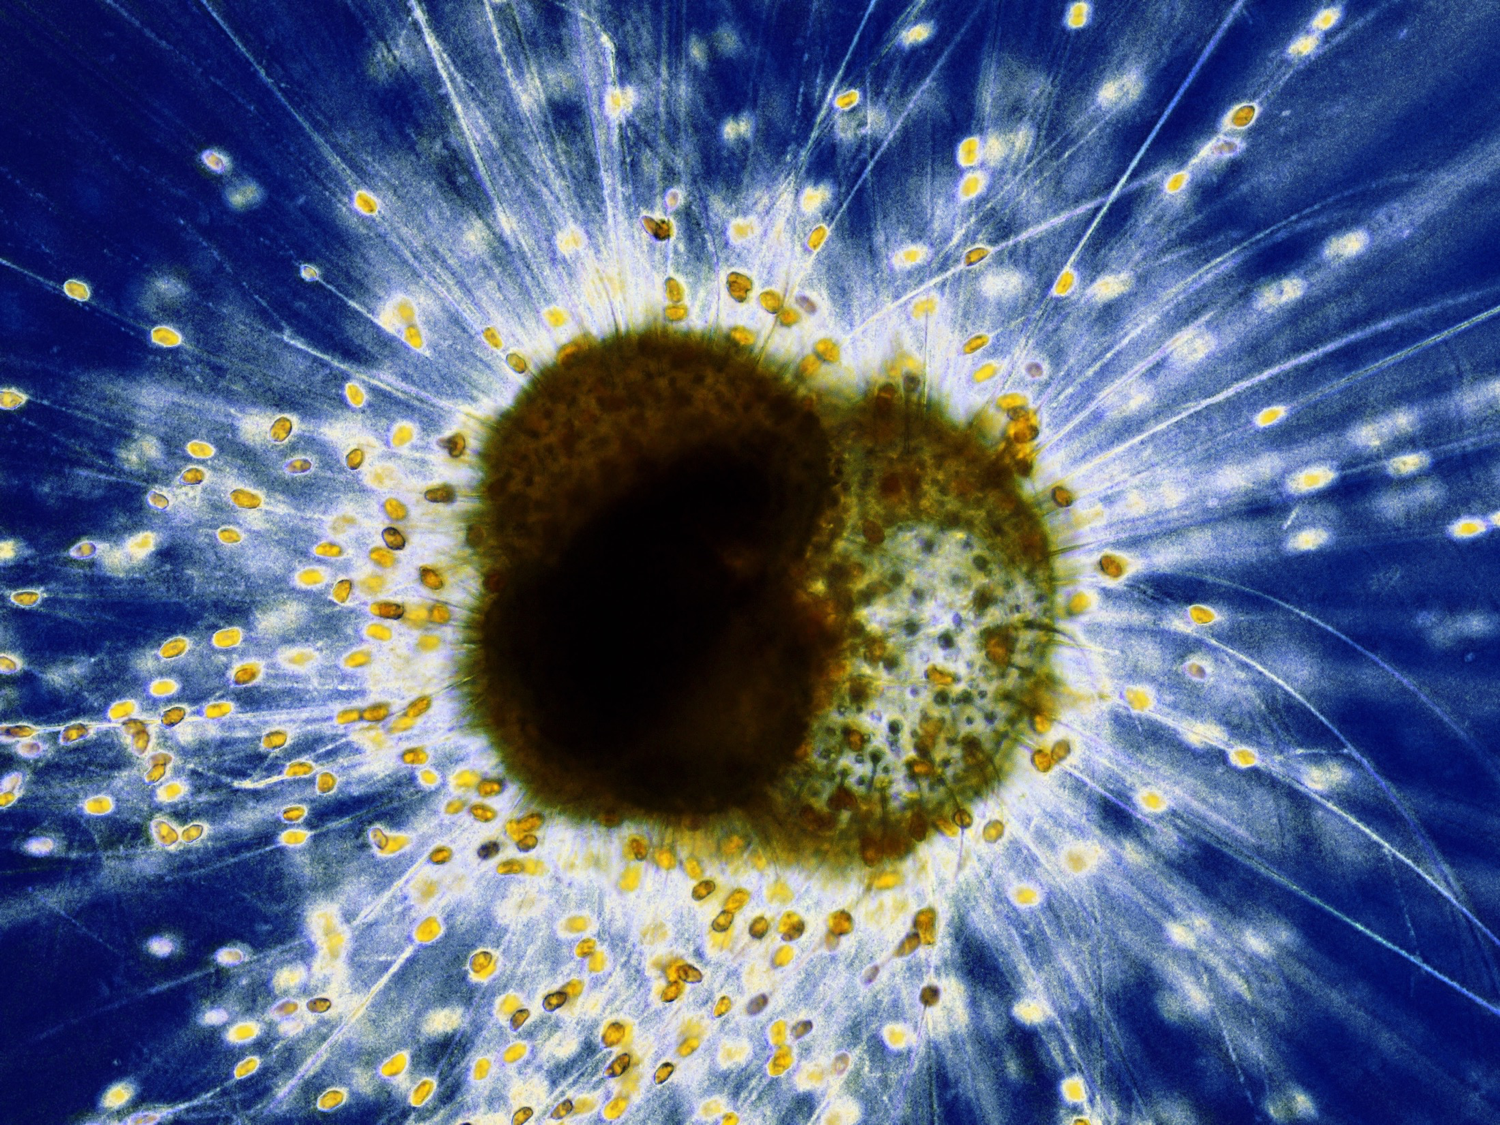 渦鞭毛藻を共生させる浮遊性有孔虫。共生藻は宿主の仮足（細胞の一部）に包まれており、有孔虫の殻の外に存在していても、細胞内共生の状態にあります。